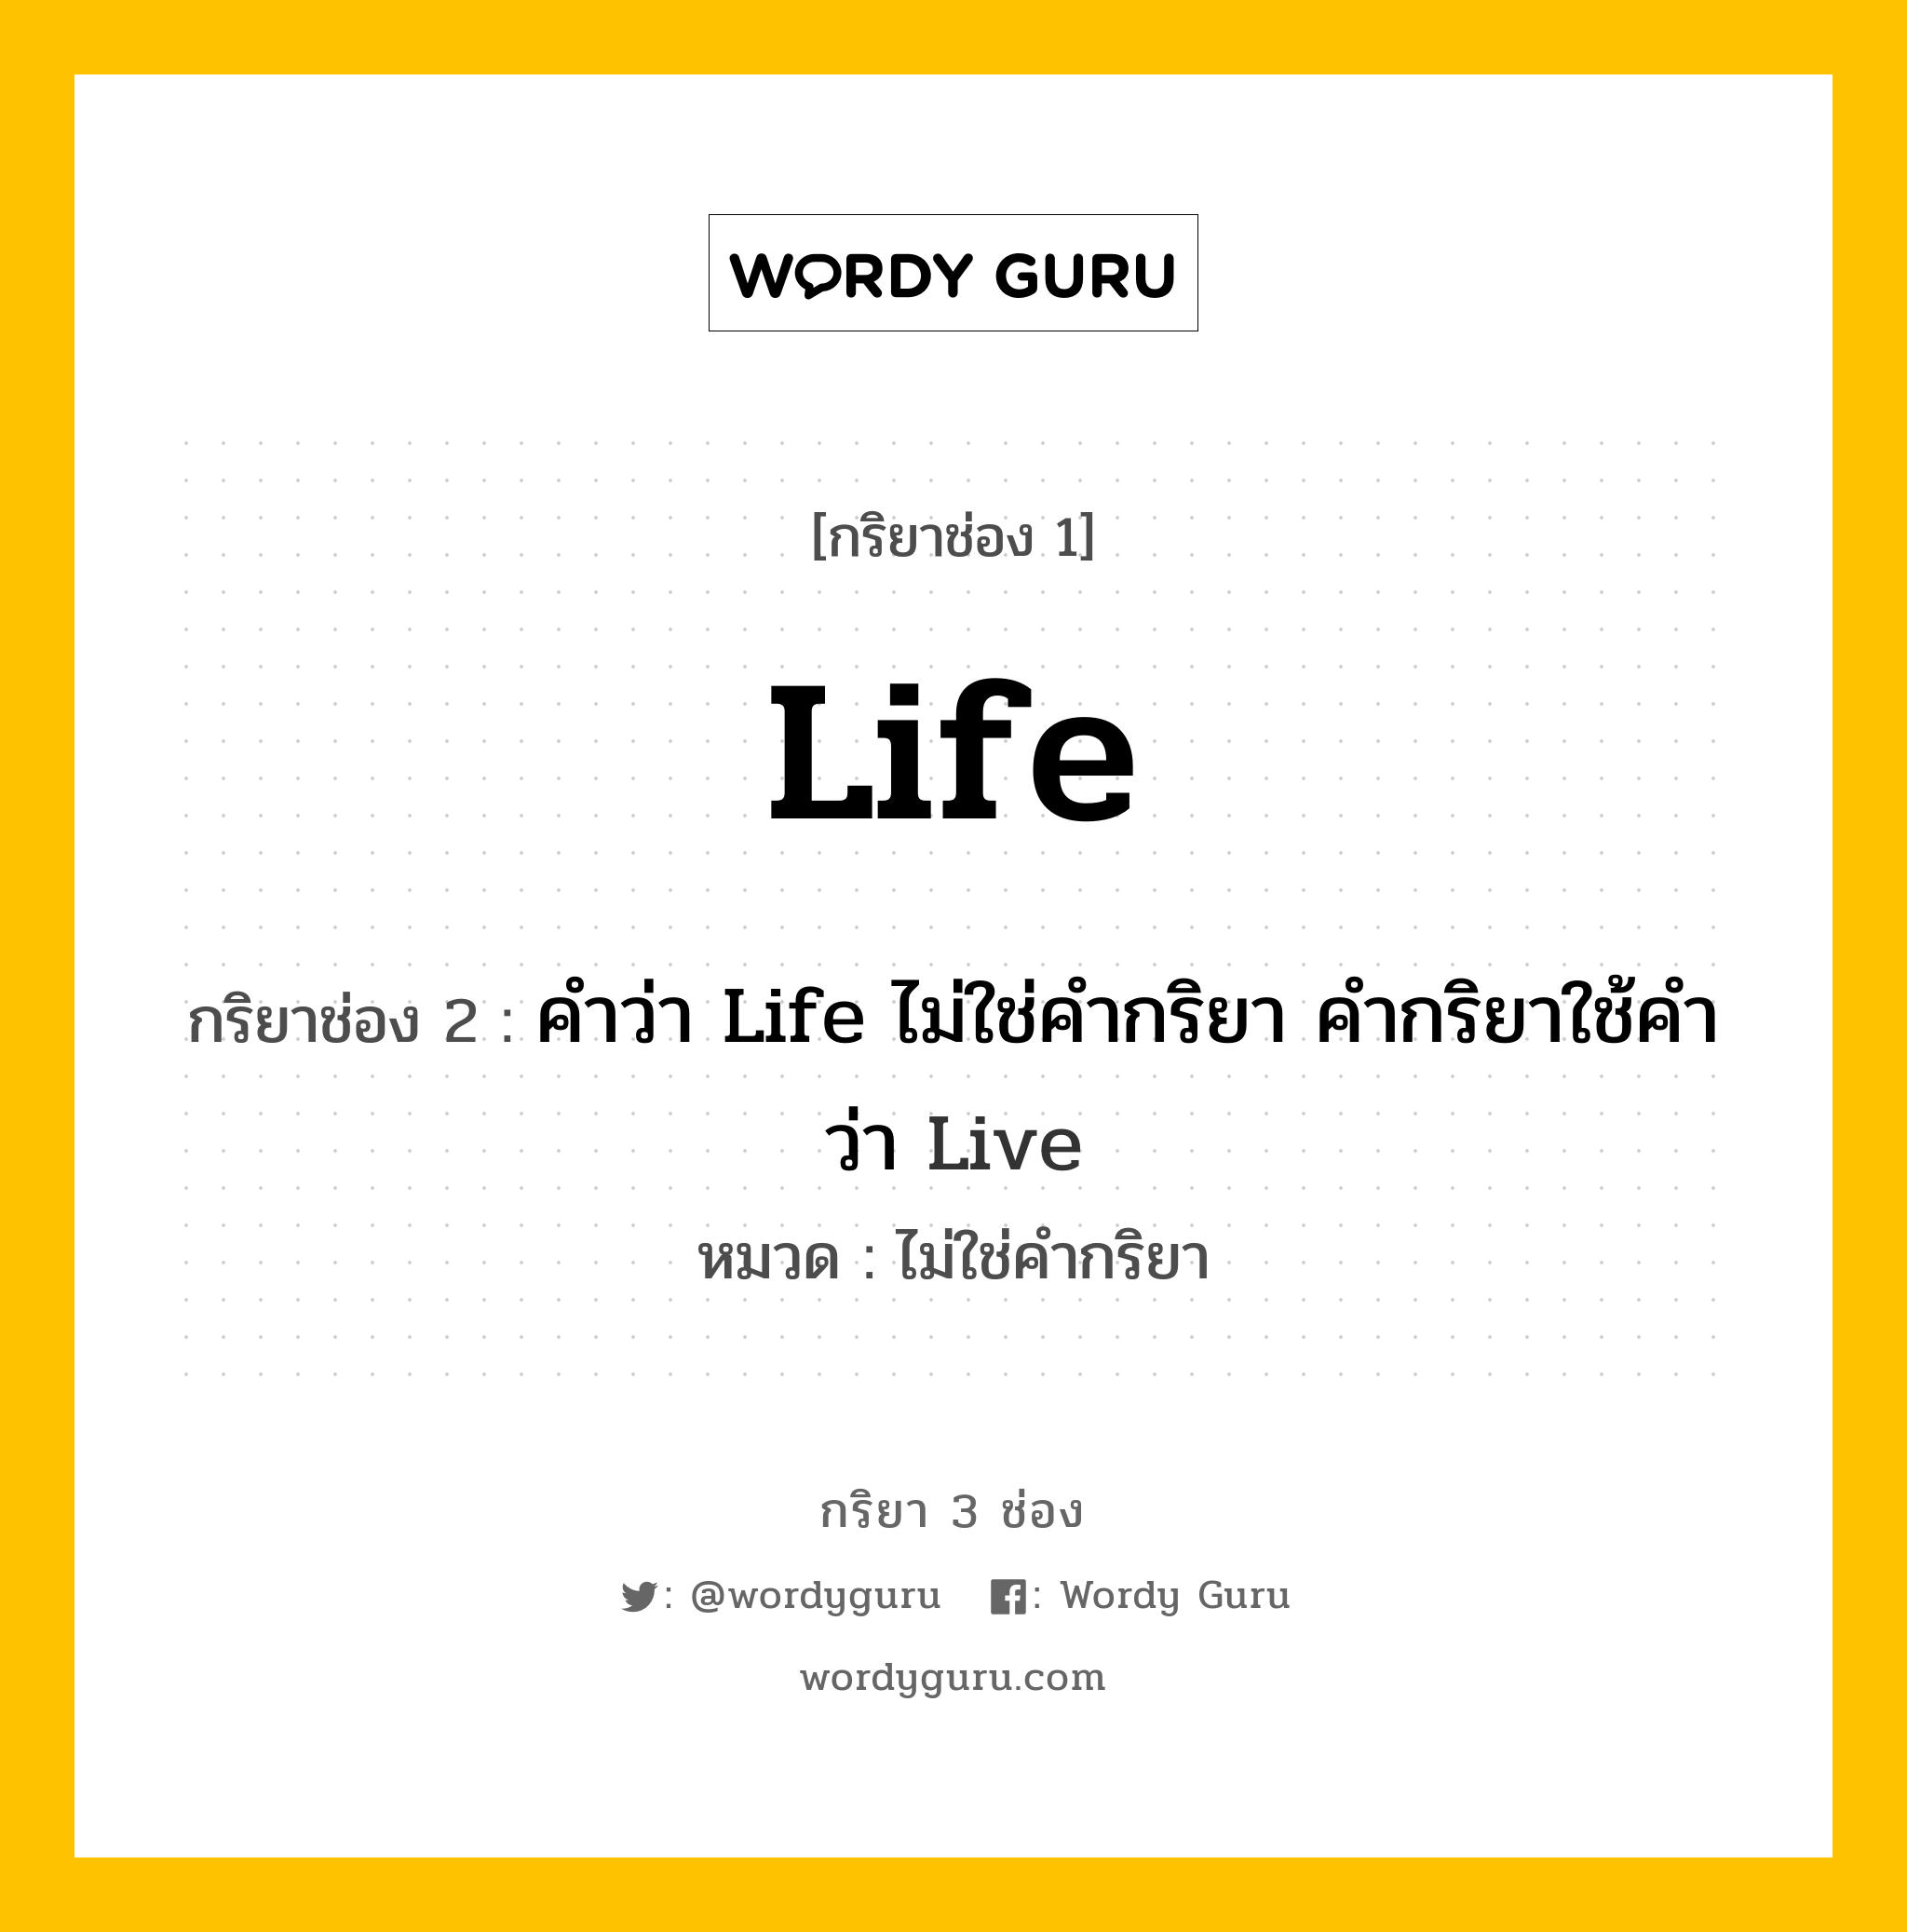 กริยา 3 ช่อง: Life ช่อง 2 Life ช่อง 3 คืออะไร, กริยาช่อง 1 Life กริยาช่อง 2 คำว่า Life ไม่ใช่คำกริยา คำกริยาใช้คำว่า Live หมวด ไม่ใช่คำกริยา หมวด ไม่ใช่คำกริยา